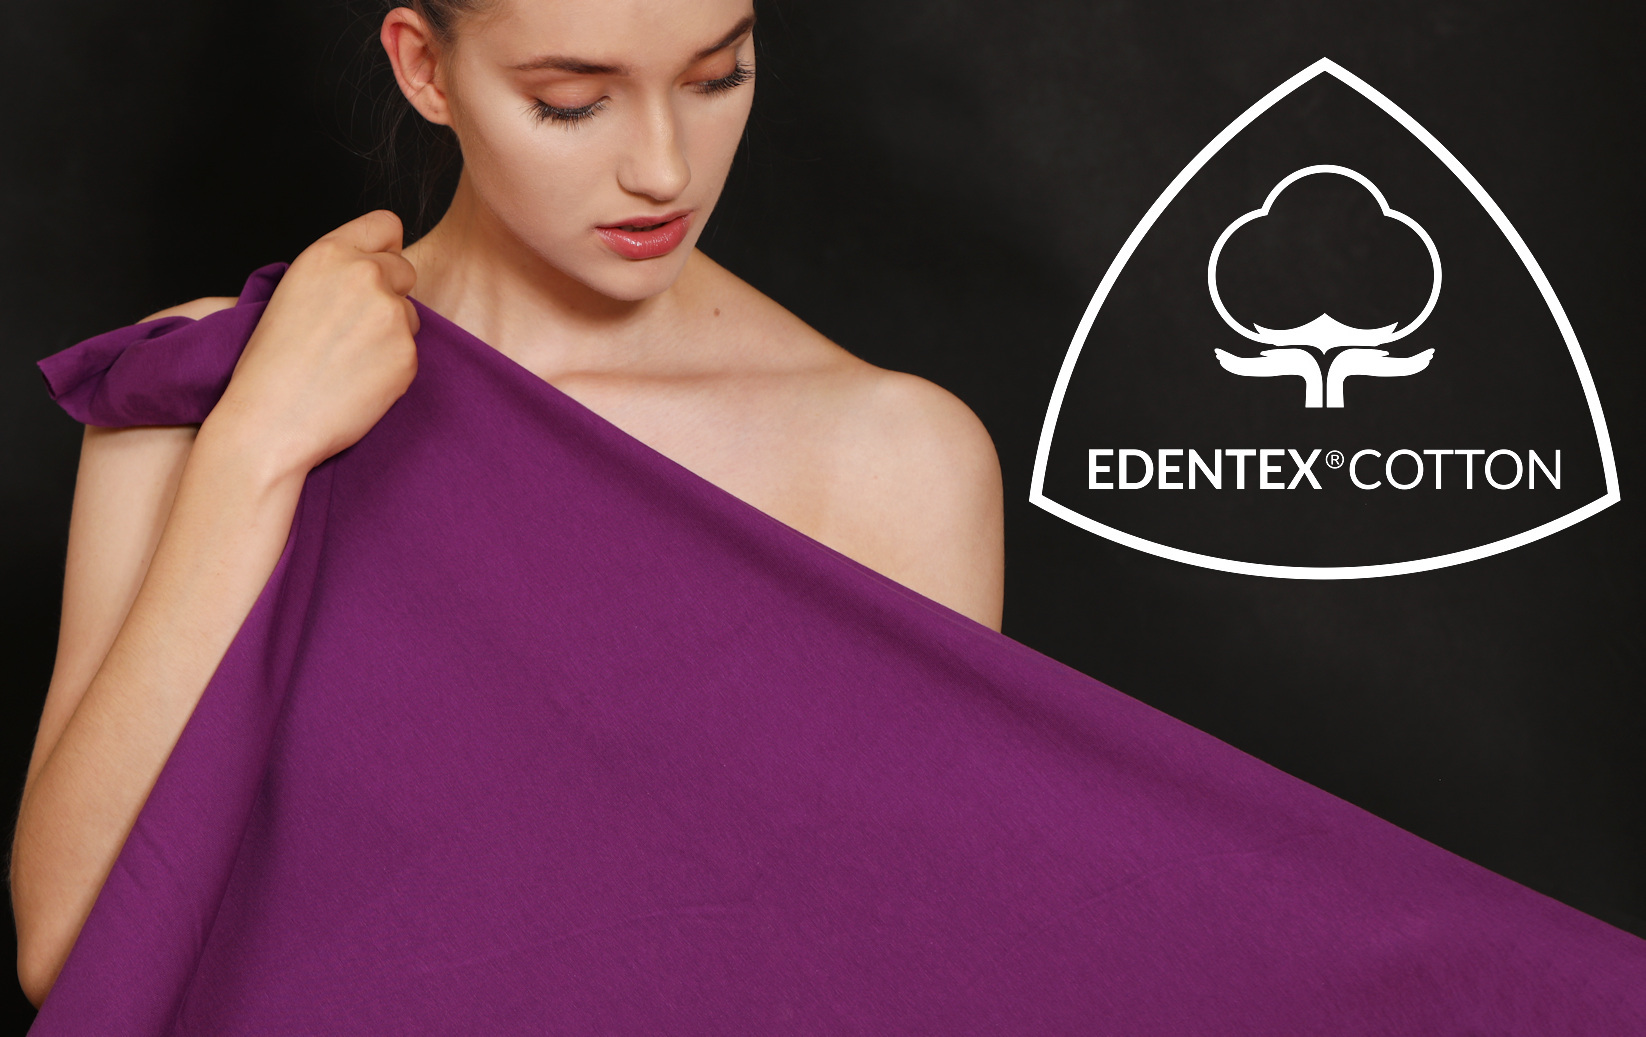 Niezmiennie, juz od 25 lat, EDENTEX® dokłada najwyższych starań, aby ze szczególną dbałością, cierpliwością i zamiłowaniem tworzyć doskonałe materiały, a zadowolenie z jakości dzianin stało zawsze na pierwszym miejscu